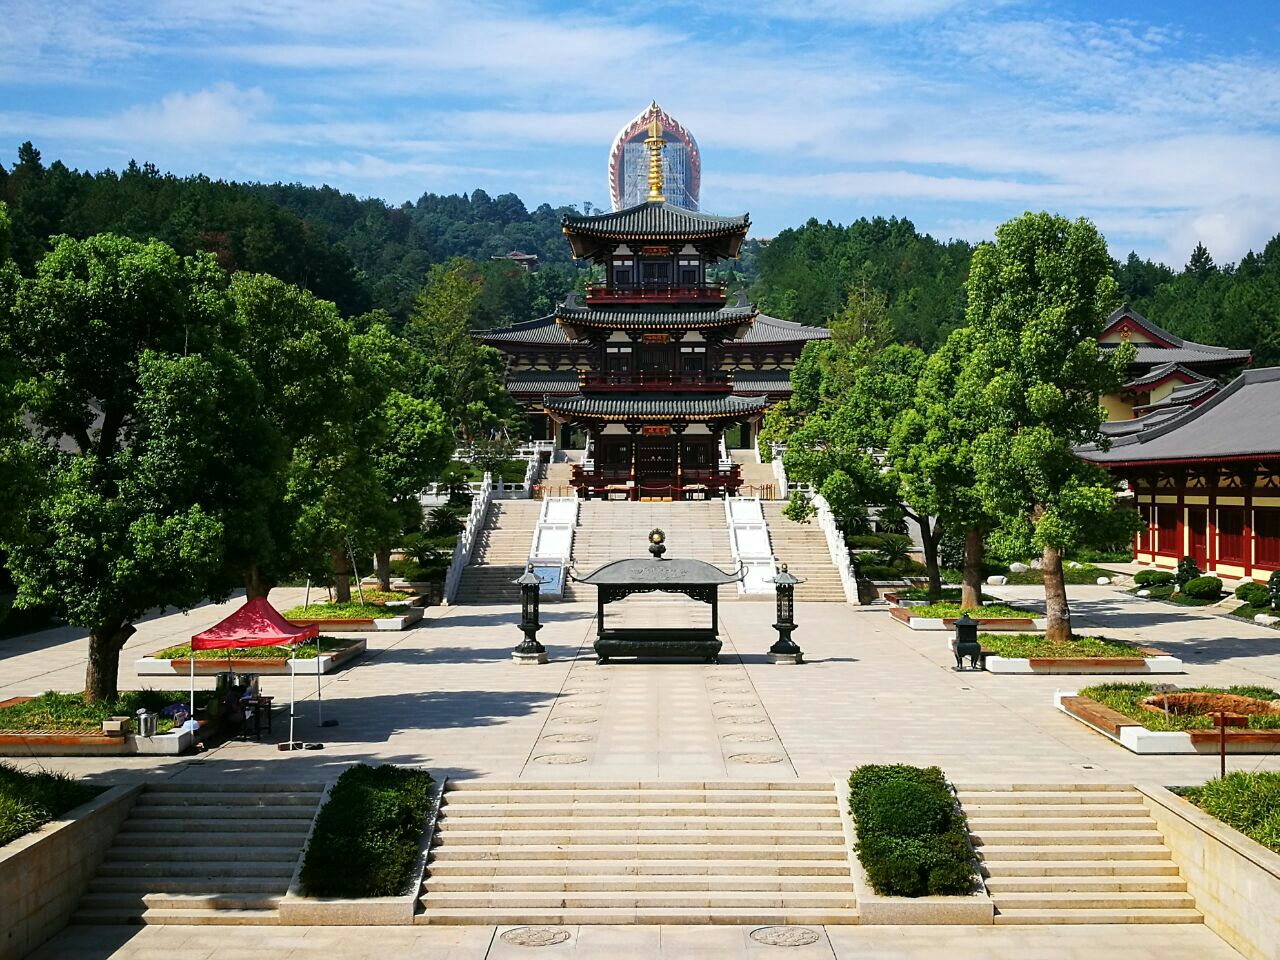 【携程攻略】奈良东大寺大佛殿景点,东大寺的大佛堂是为世界最大的木造建筑。大佛殿内有一座高15米的大佛…